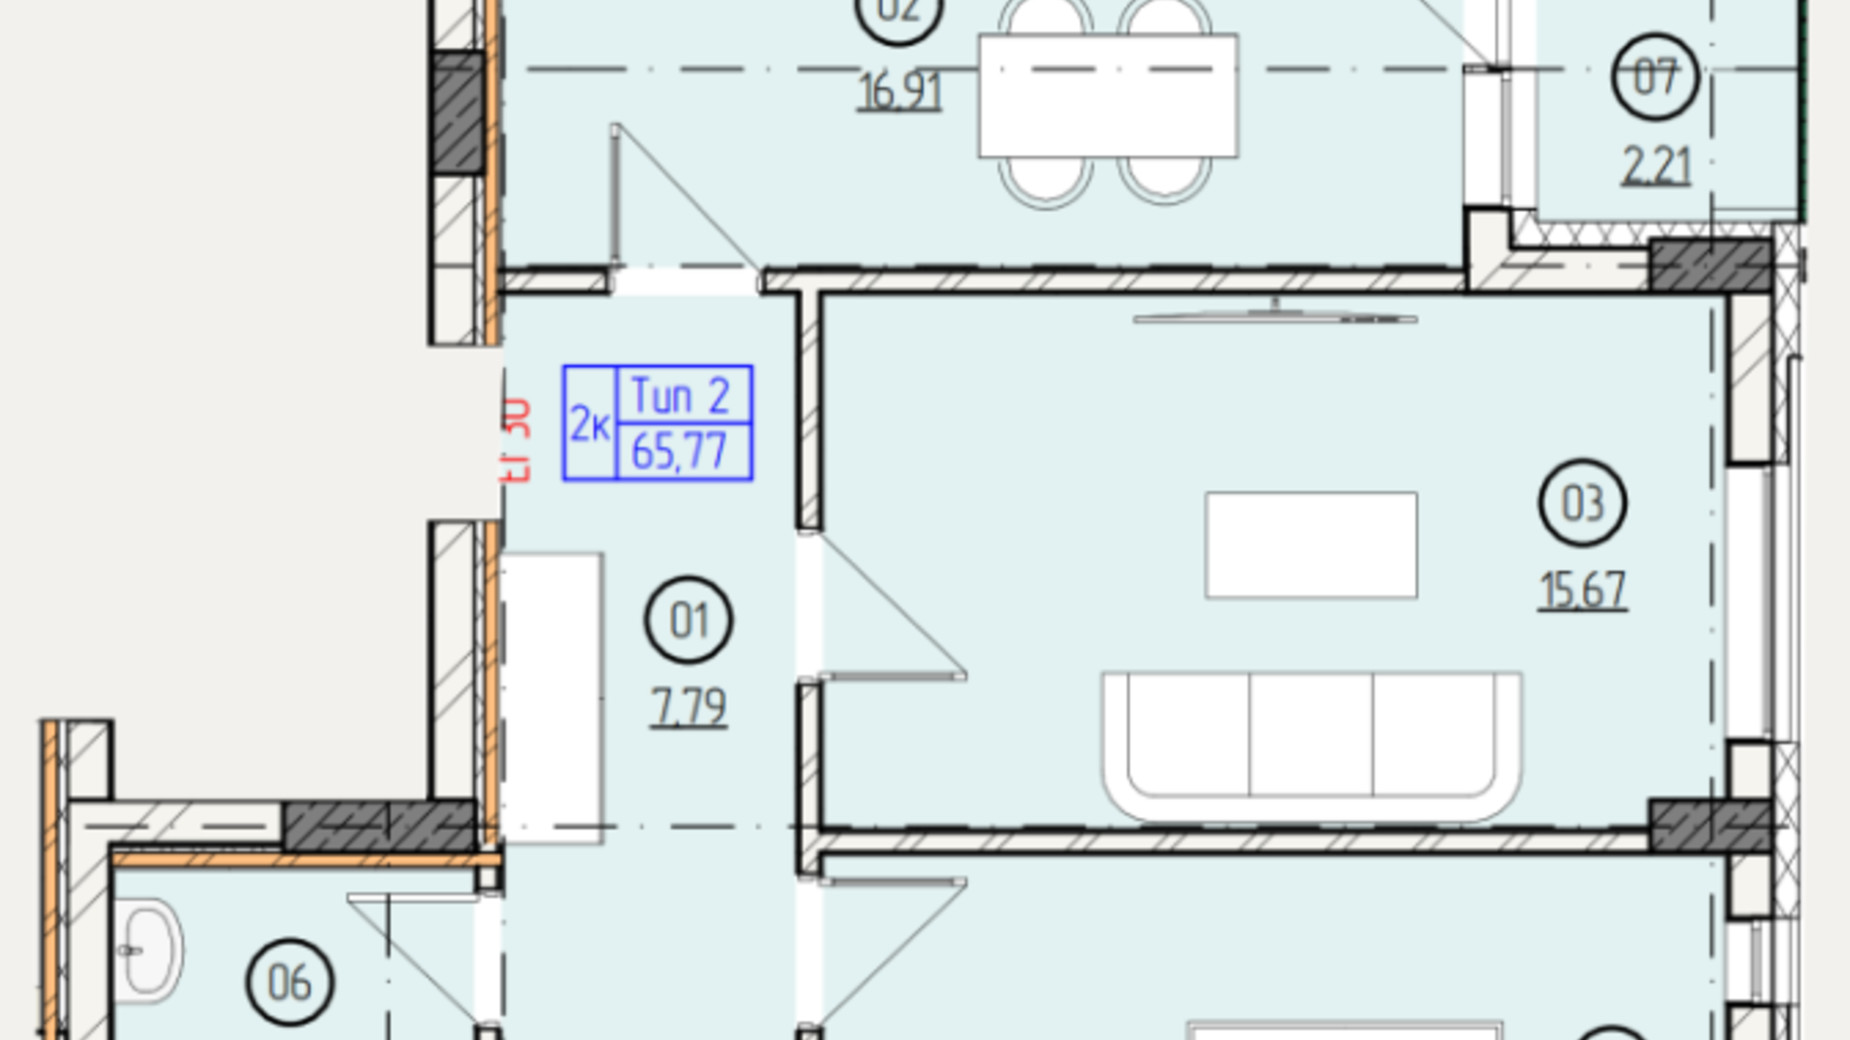 Планировка 2-комнатной квартиры в ЖК Французский двор 65.77 м², фото 635304